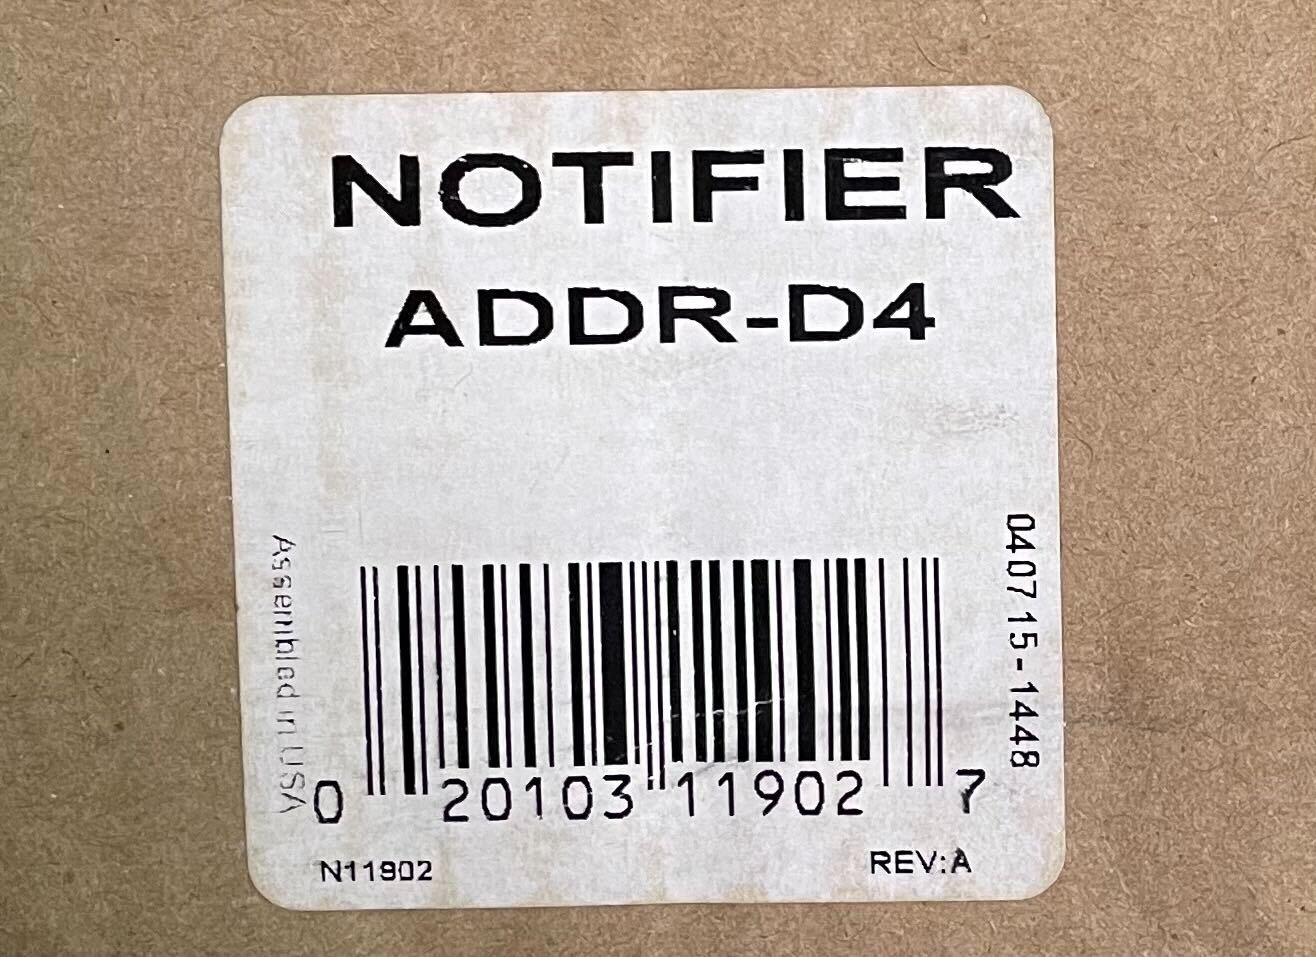 Notifier ADDR-D4 - The Fire Alarm Supplier